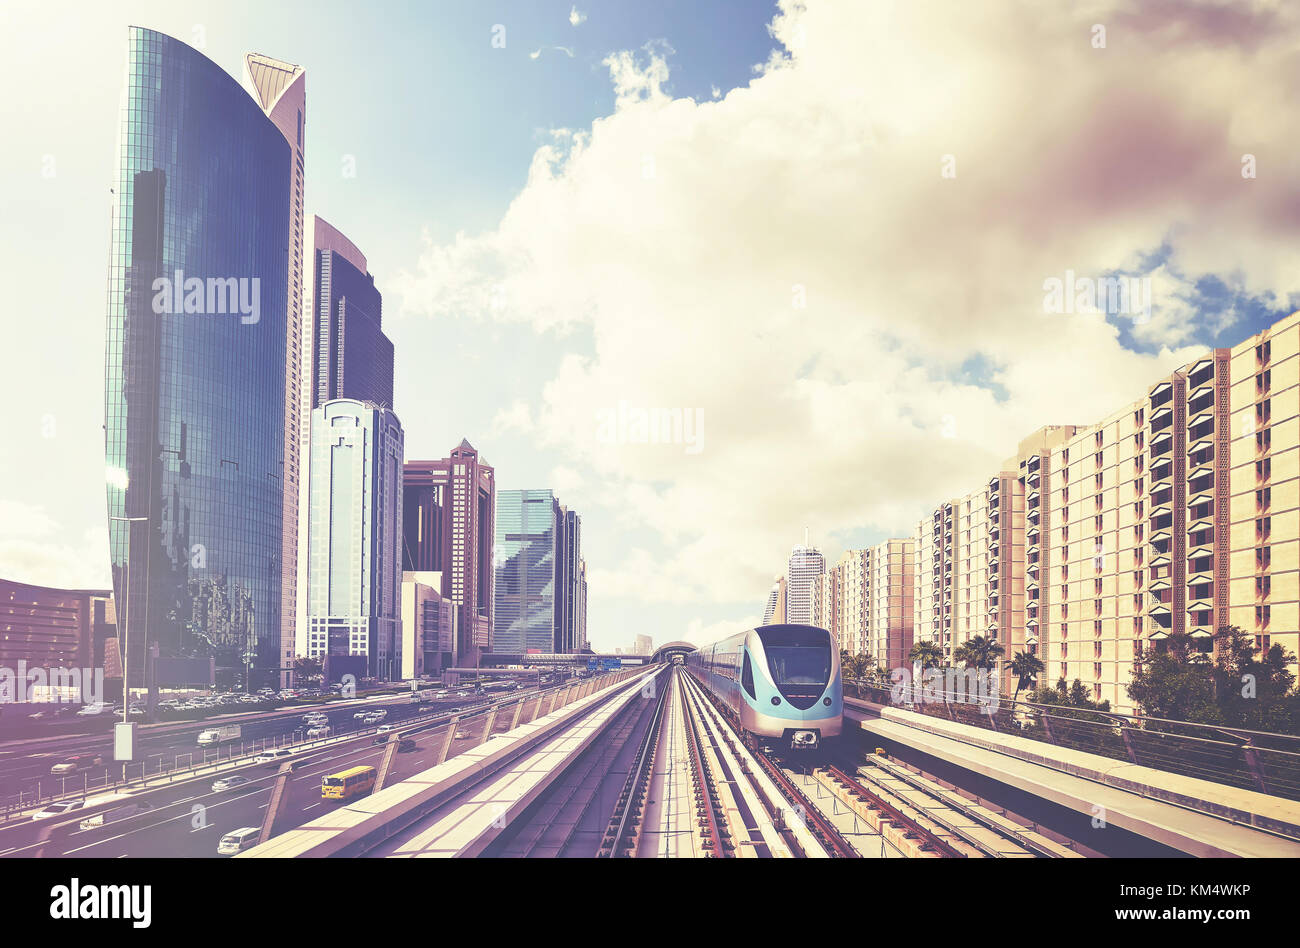 Treno della metropolitana nel centro cittadino di Dubai, retrò immagine stilizzata, Emirati arabi uniti. Foto Stock